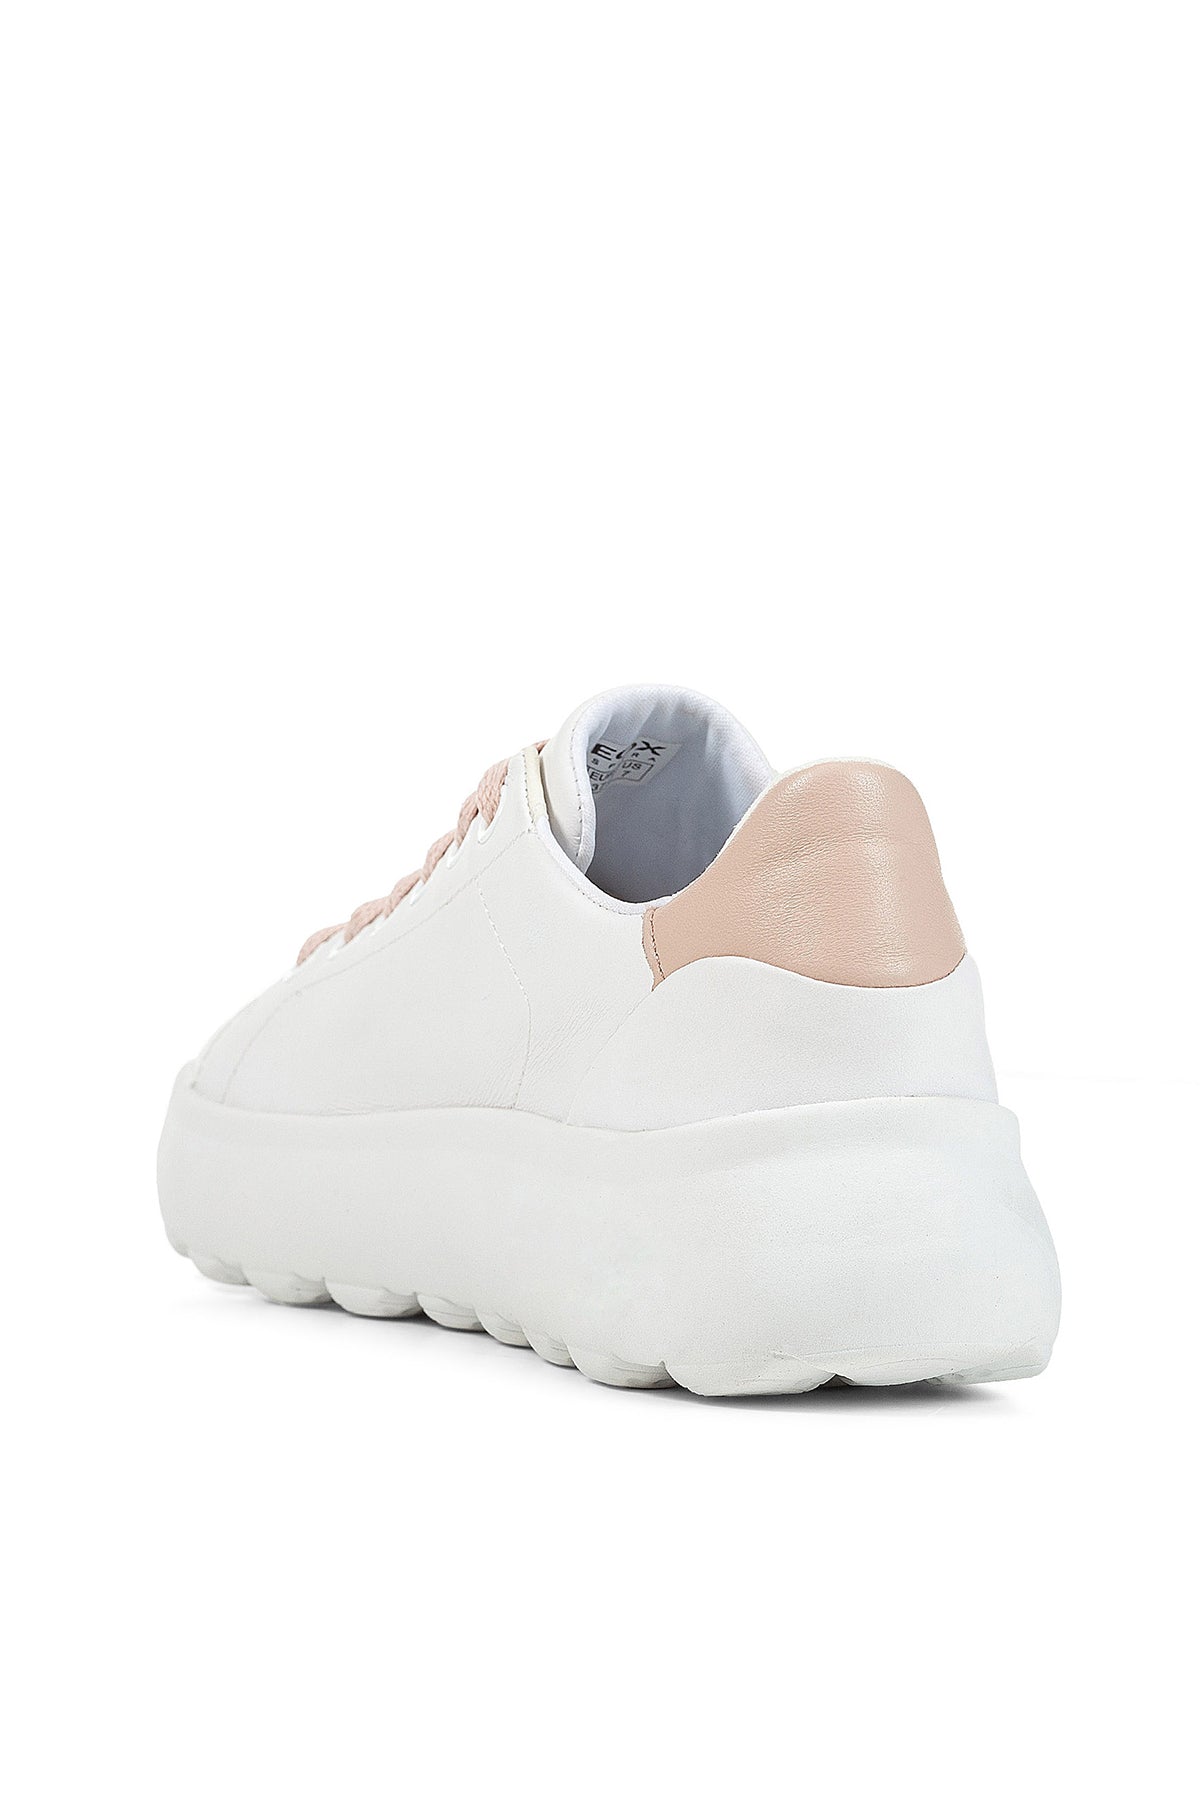 Geox Kadın Beyaz Deri Spherica Ec4.1 Kalın Tabanlı Sneaker